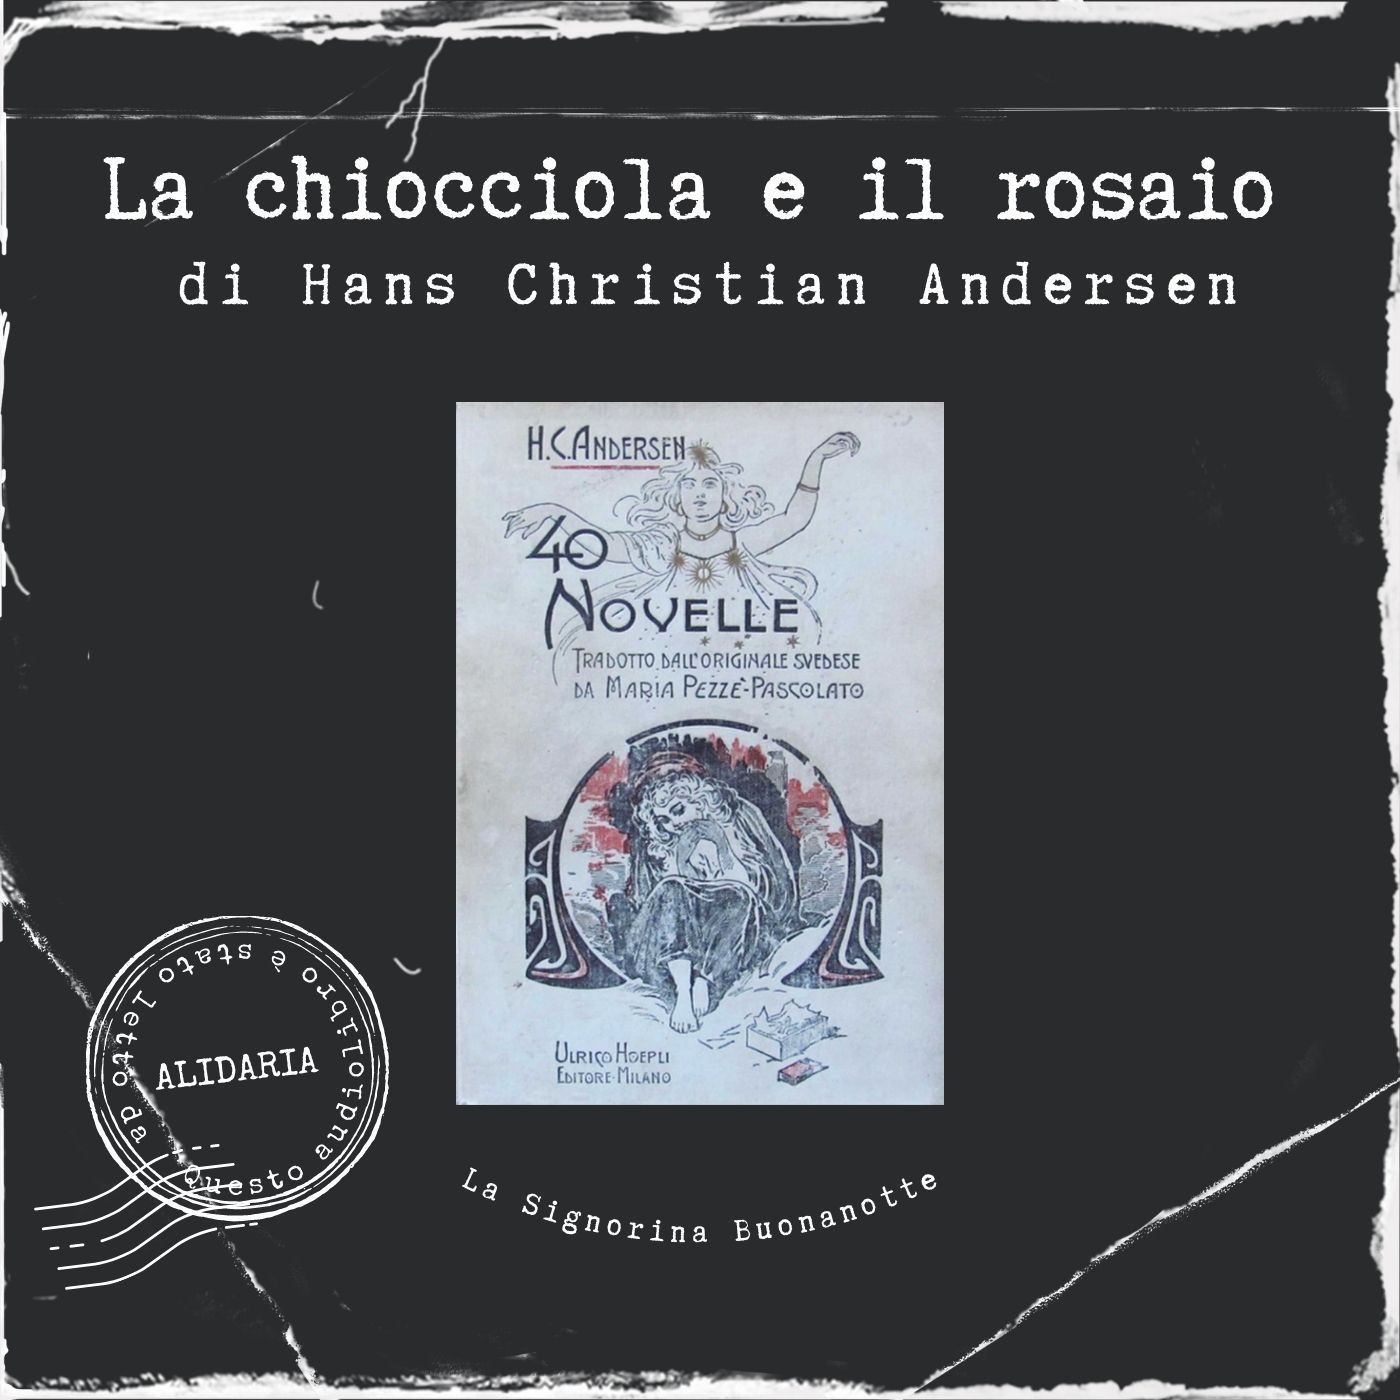 La chiocciola e il rosaio: l'audiolibro delle novelle di Andersen